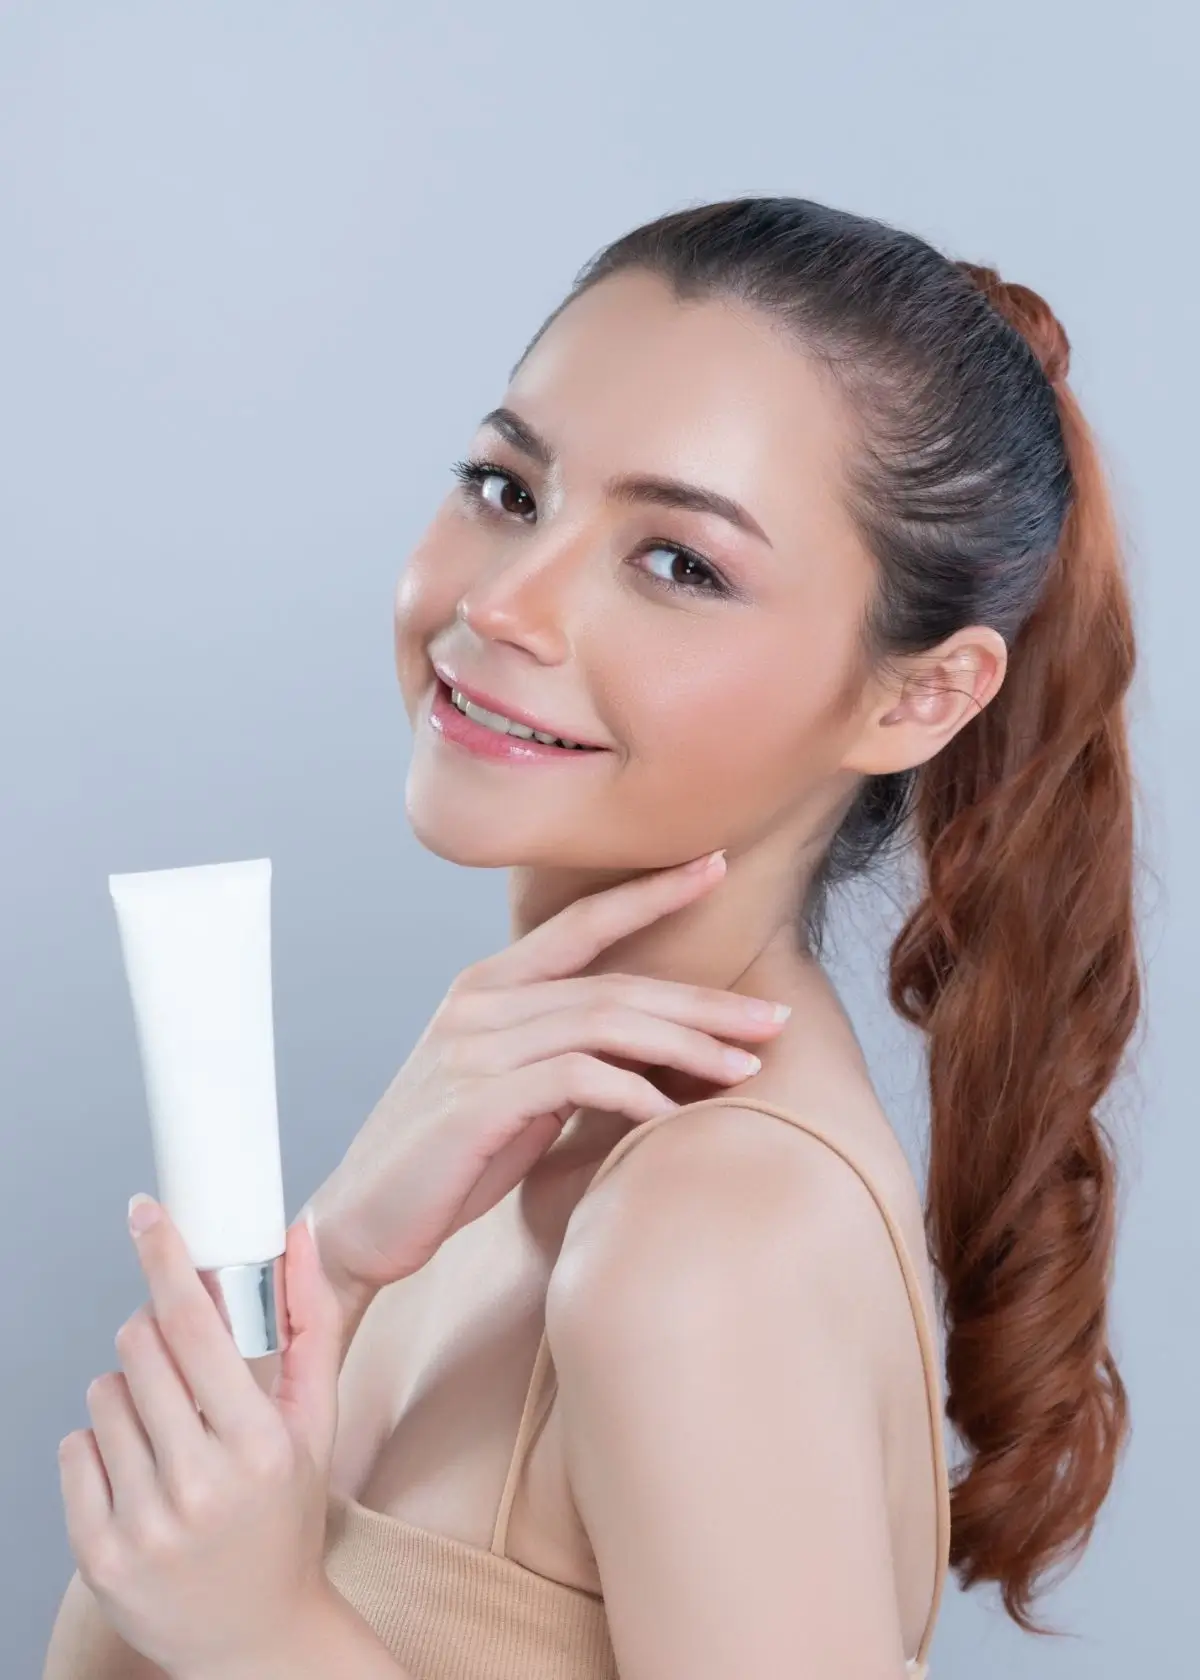 Best Face Wash For Sensitive Skin